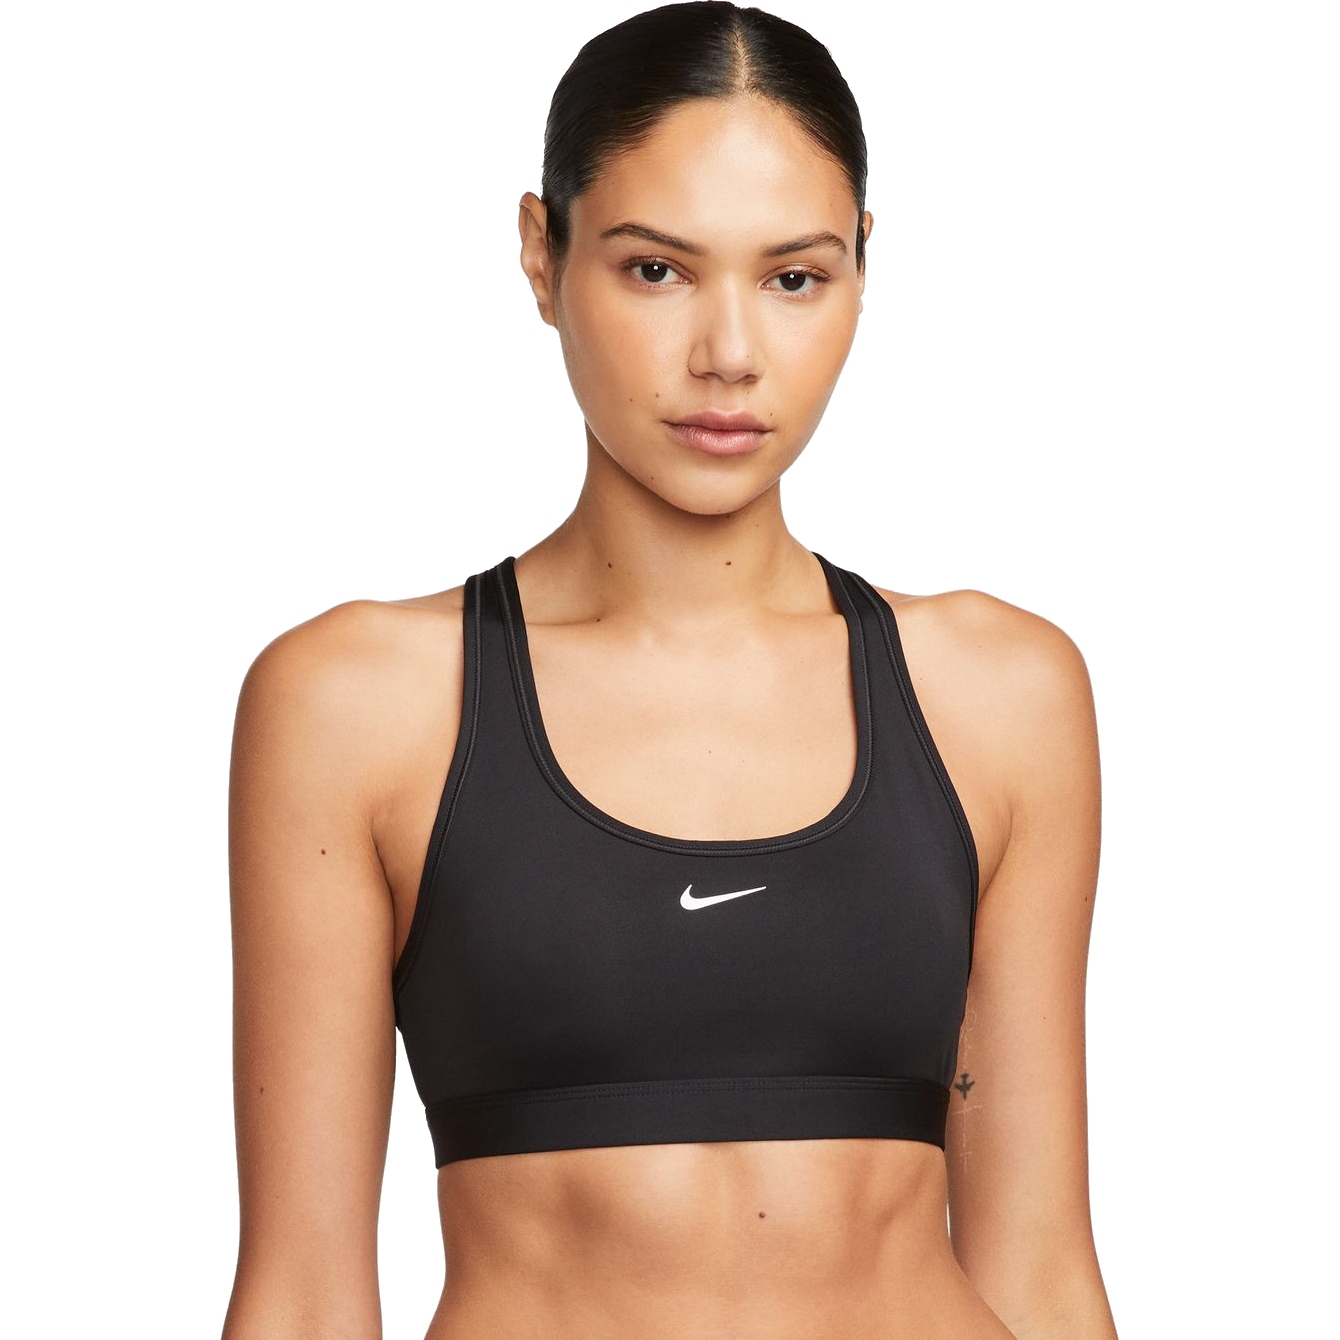 Productfoto van Nike Swoosh Non-padded sport-bh met lichte ondersteuning - zwart/wit DX6817-010